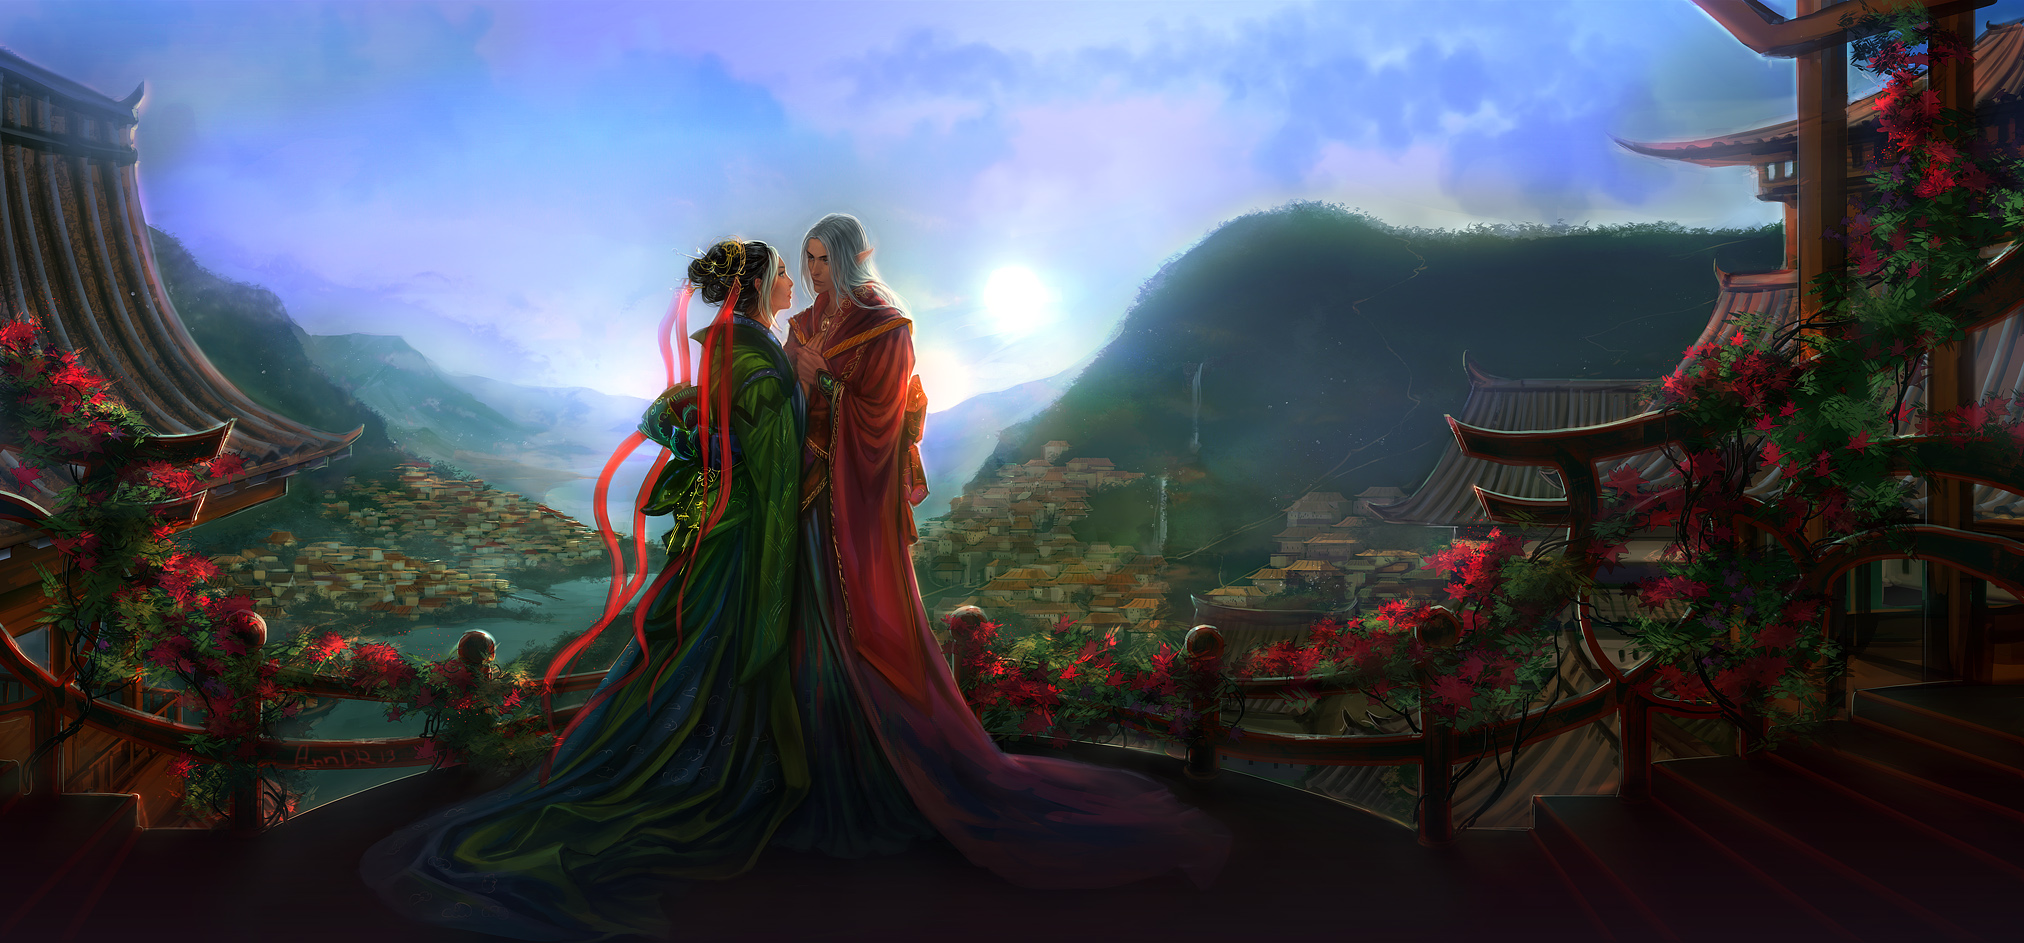 Free download wallpaper Landscape, Fantasy, Love, Couple, Romantic, Asian on your PC desktop